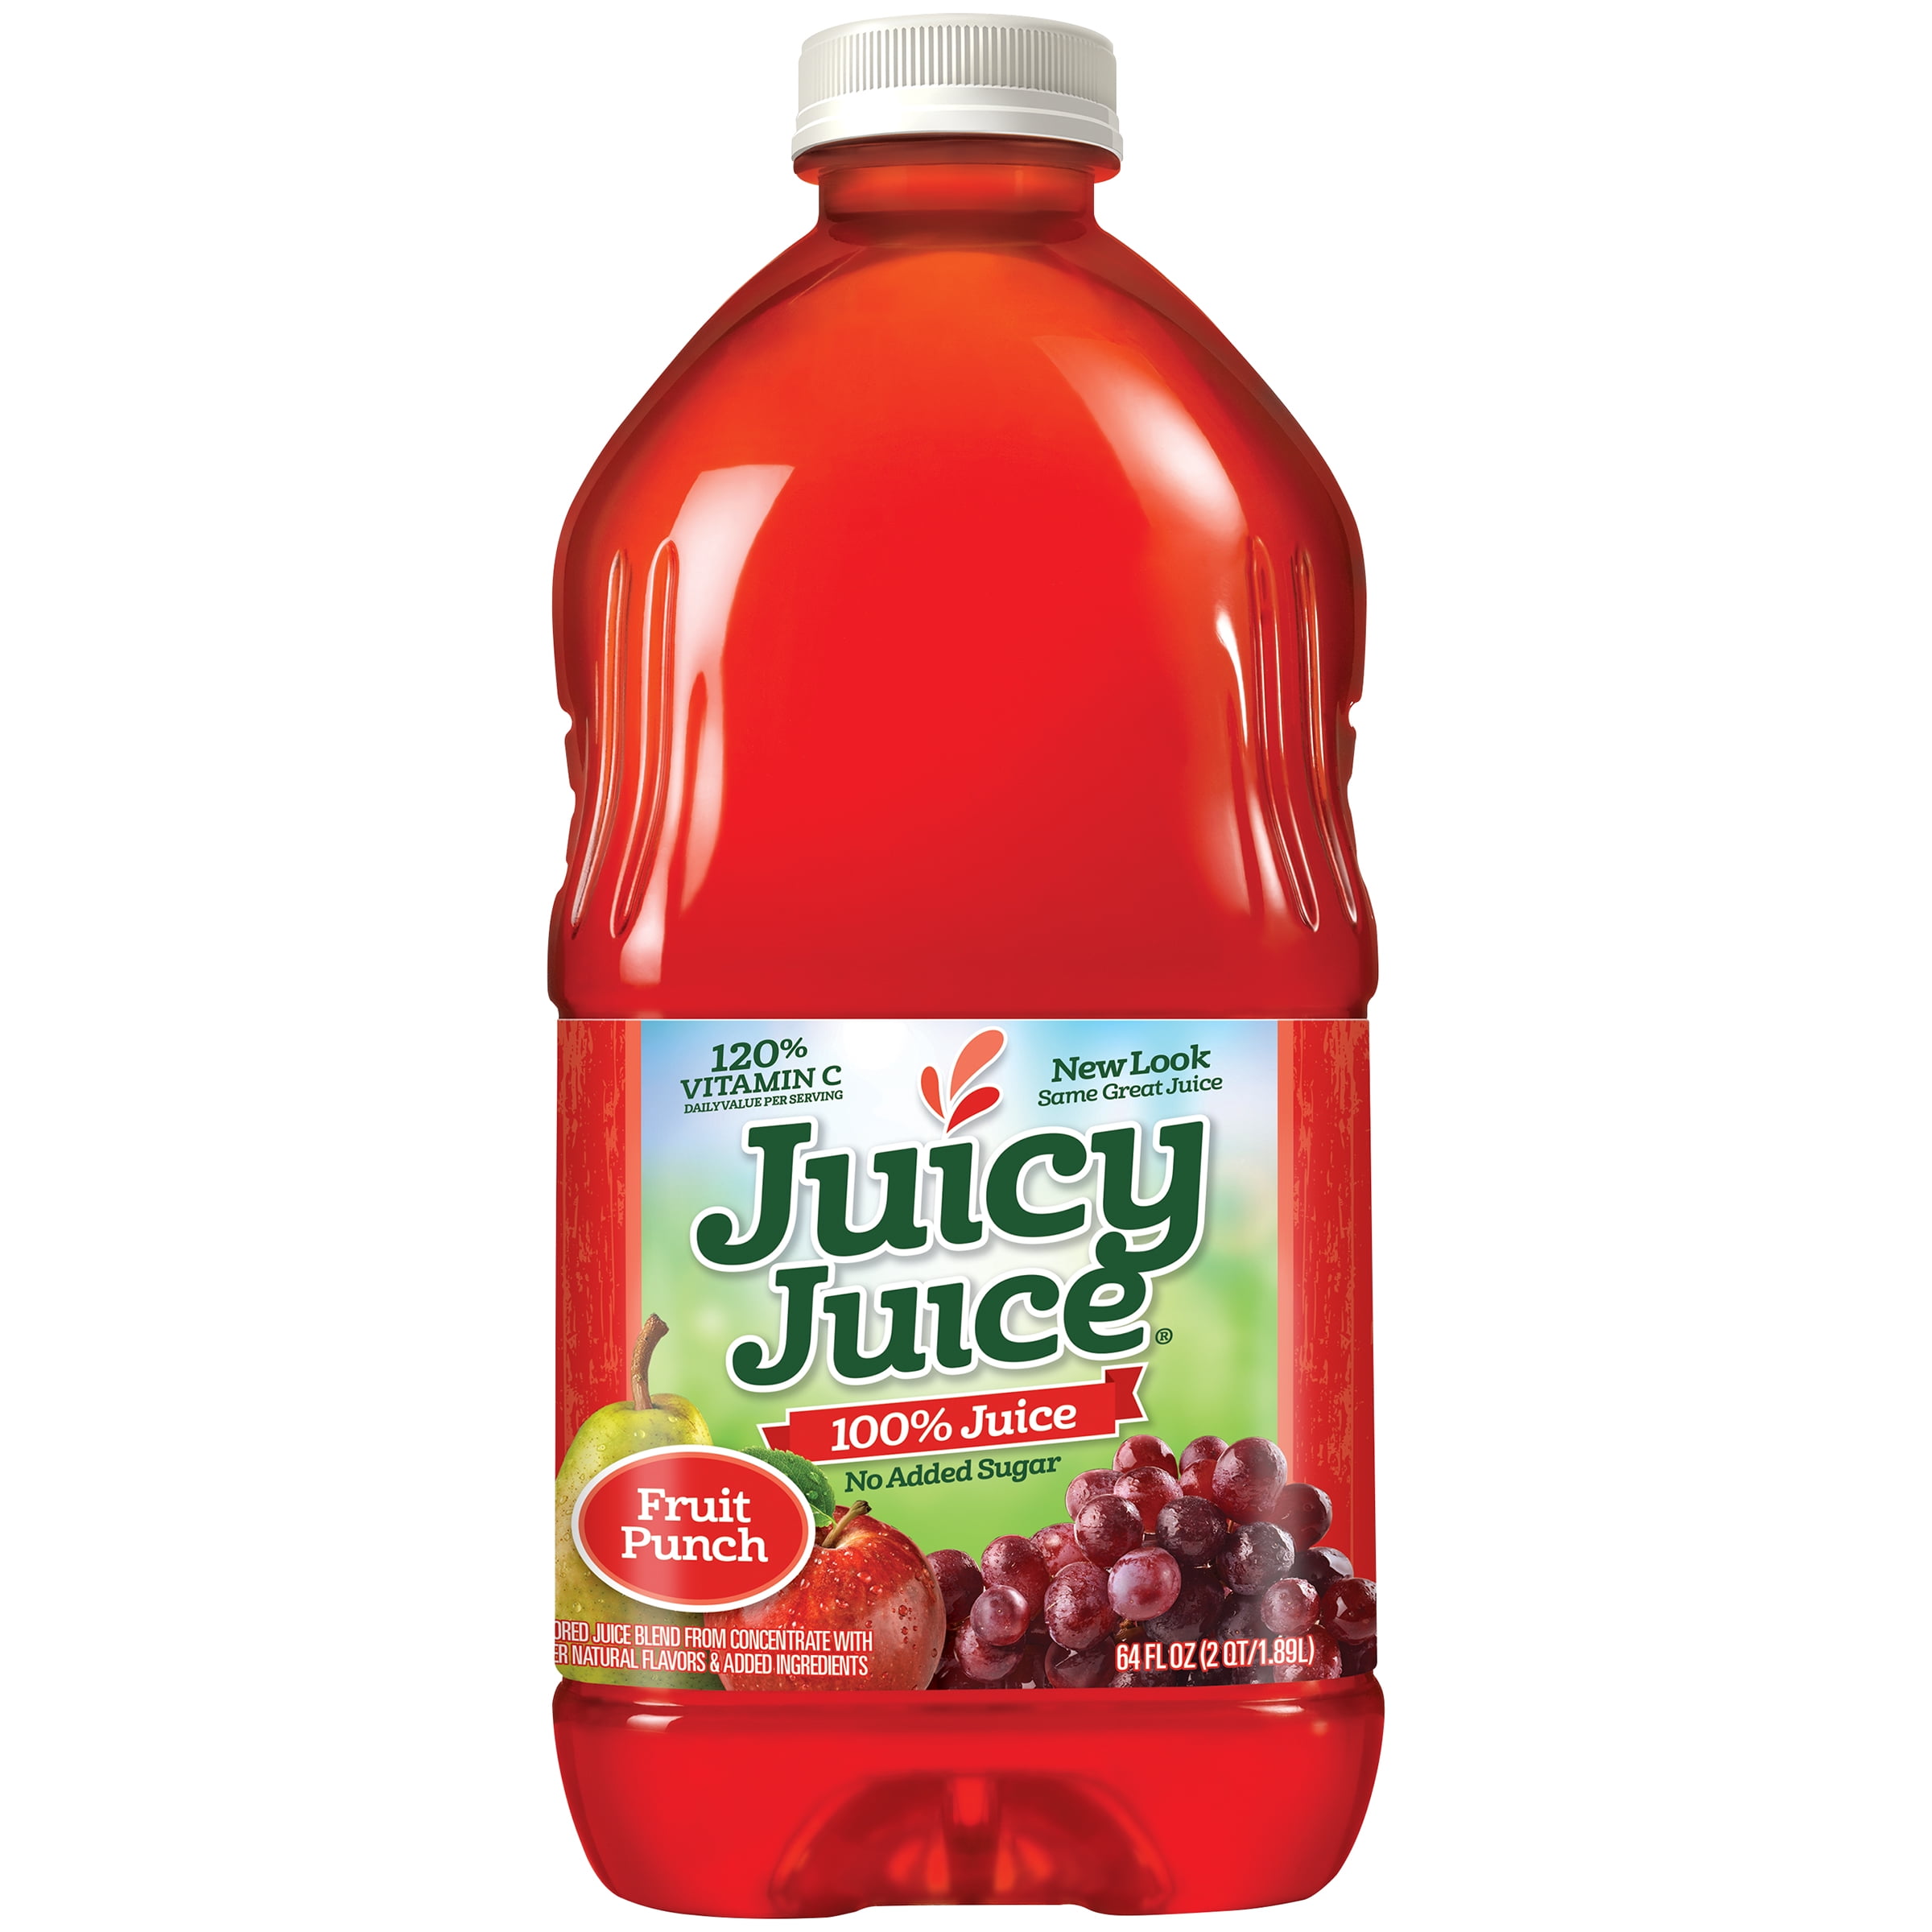 Juicyjuice53